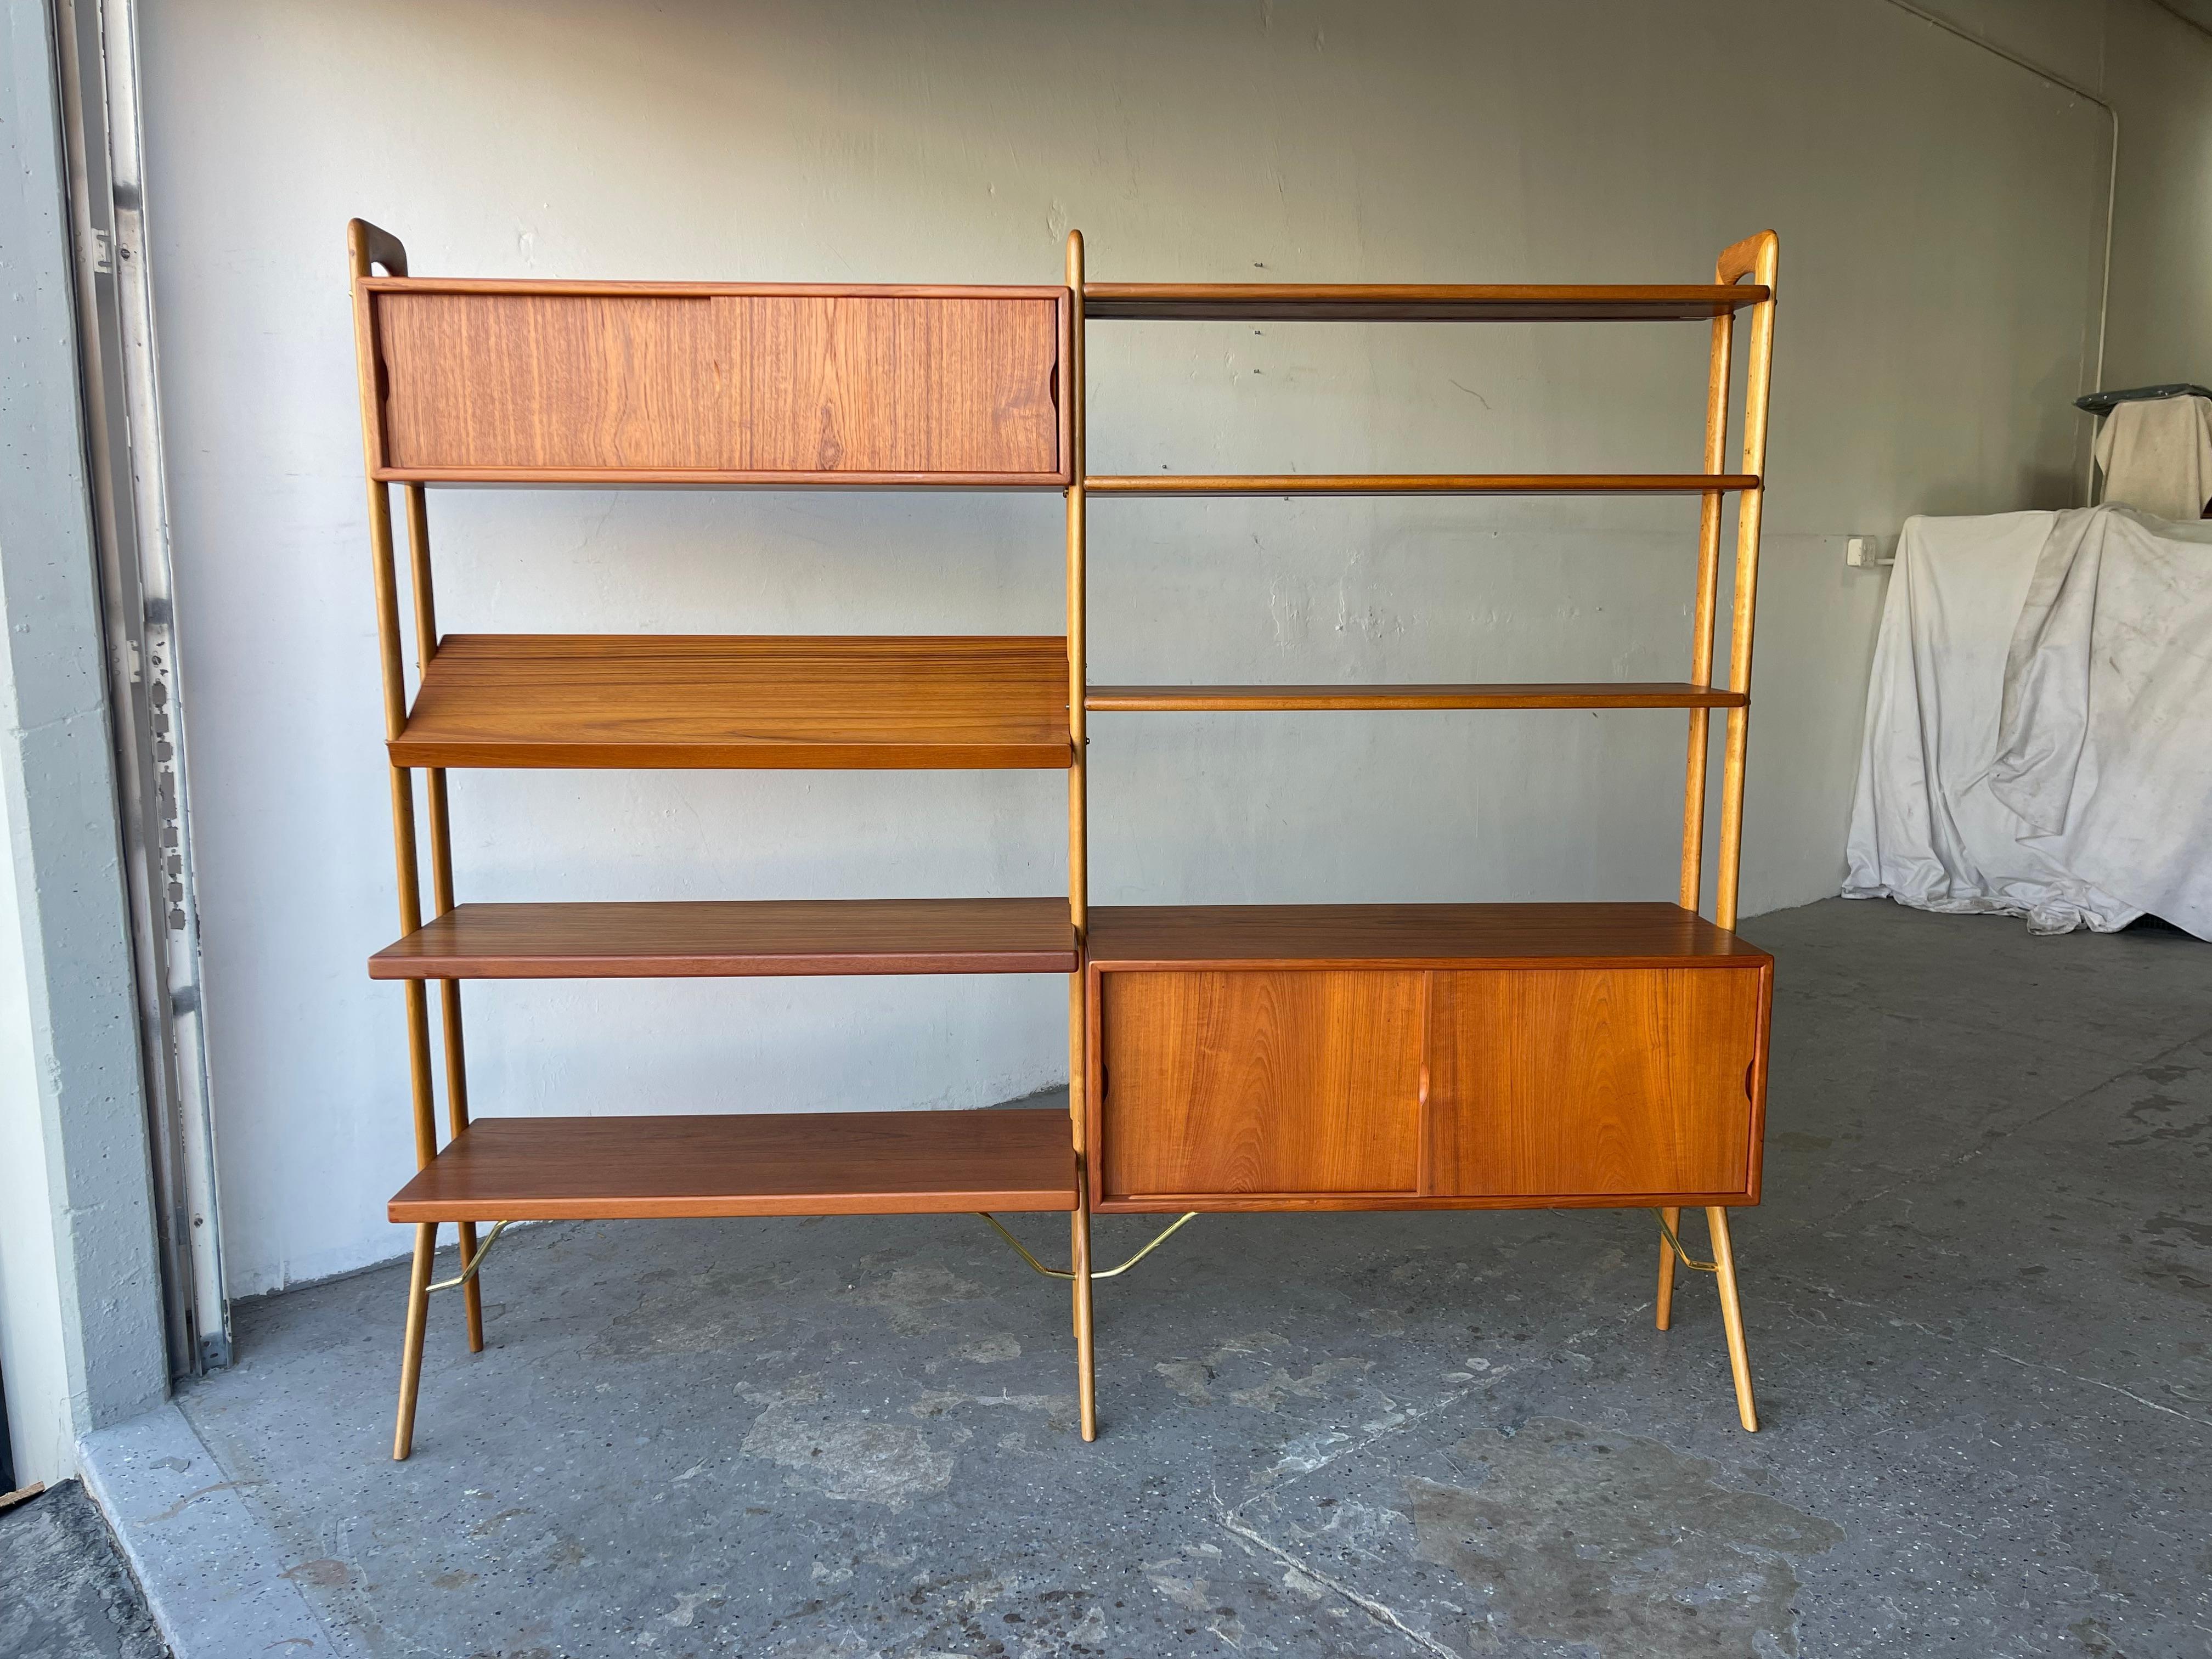 Scandinavian Modern Danish Modern Kurt Ostervig Teak Wall Unit or Room Divider / Book Shelves 2 Bay